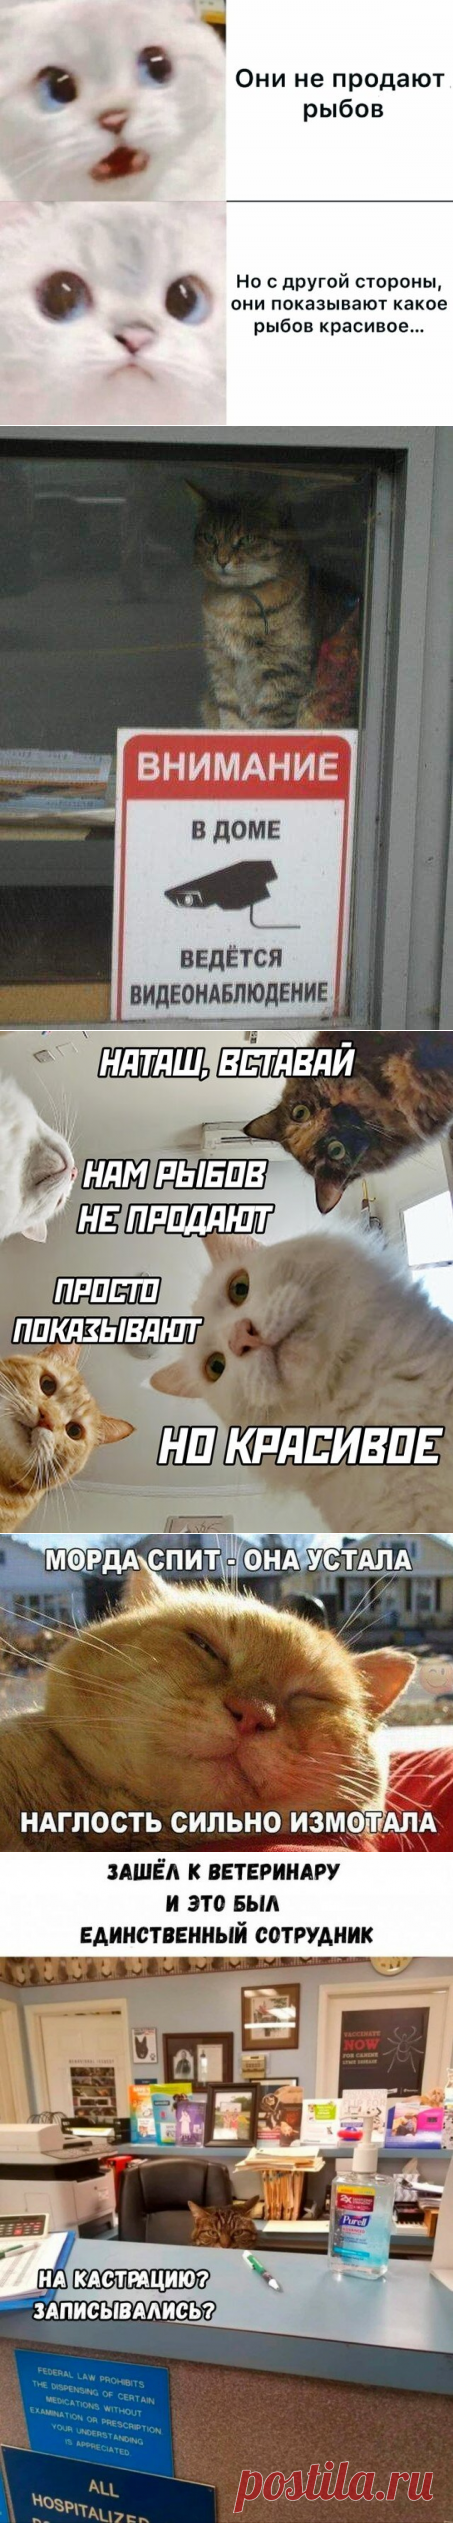 😹Смешные фото кошек. Милые котейки) (часть 4) 😹 | Саморазвитие как образ жизни. | Яндекс Дзен